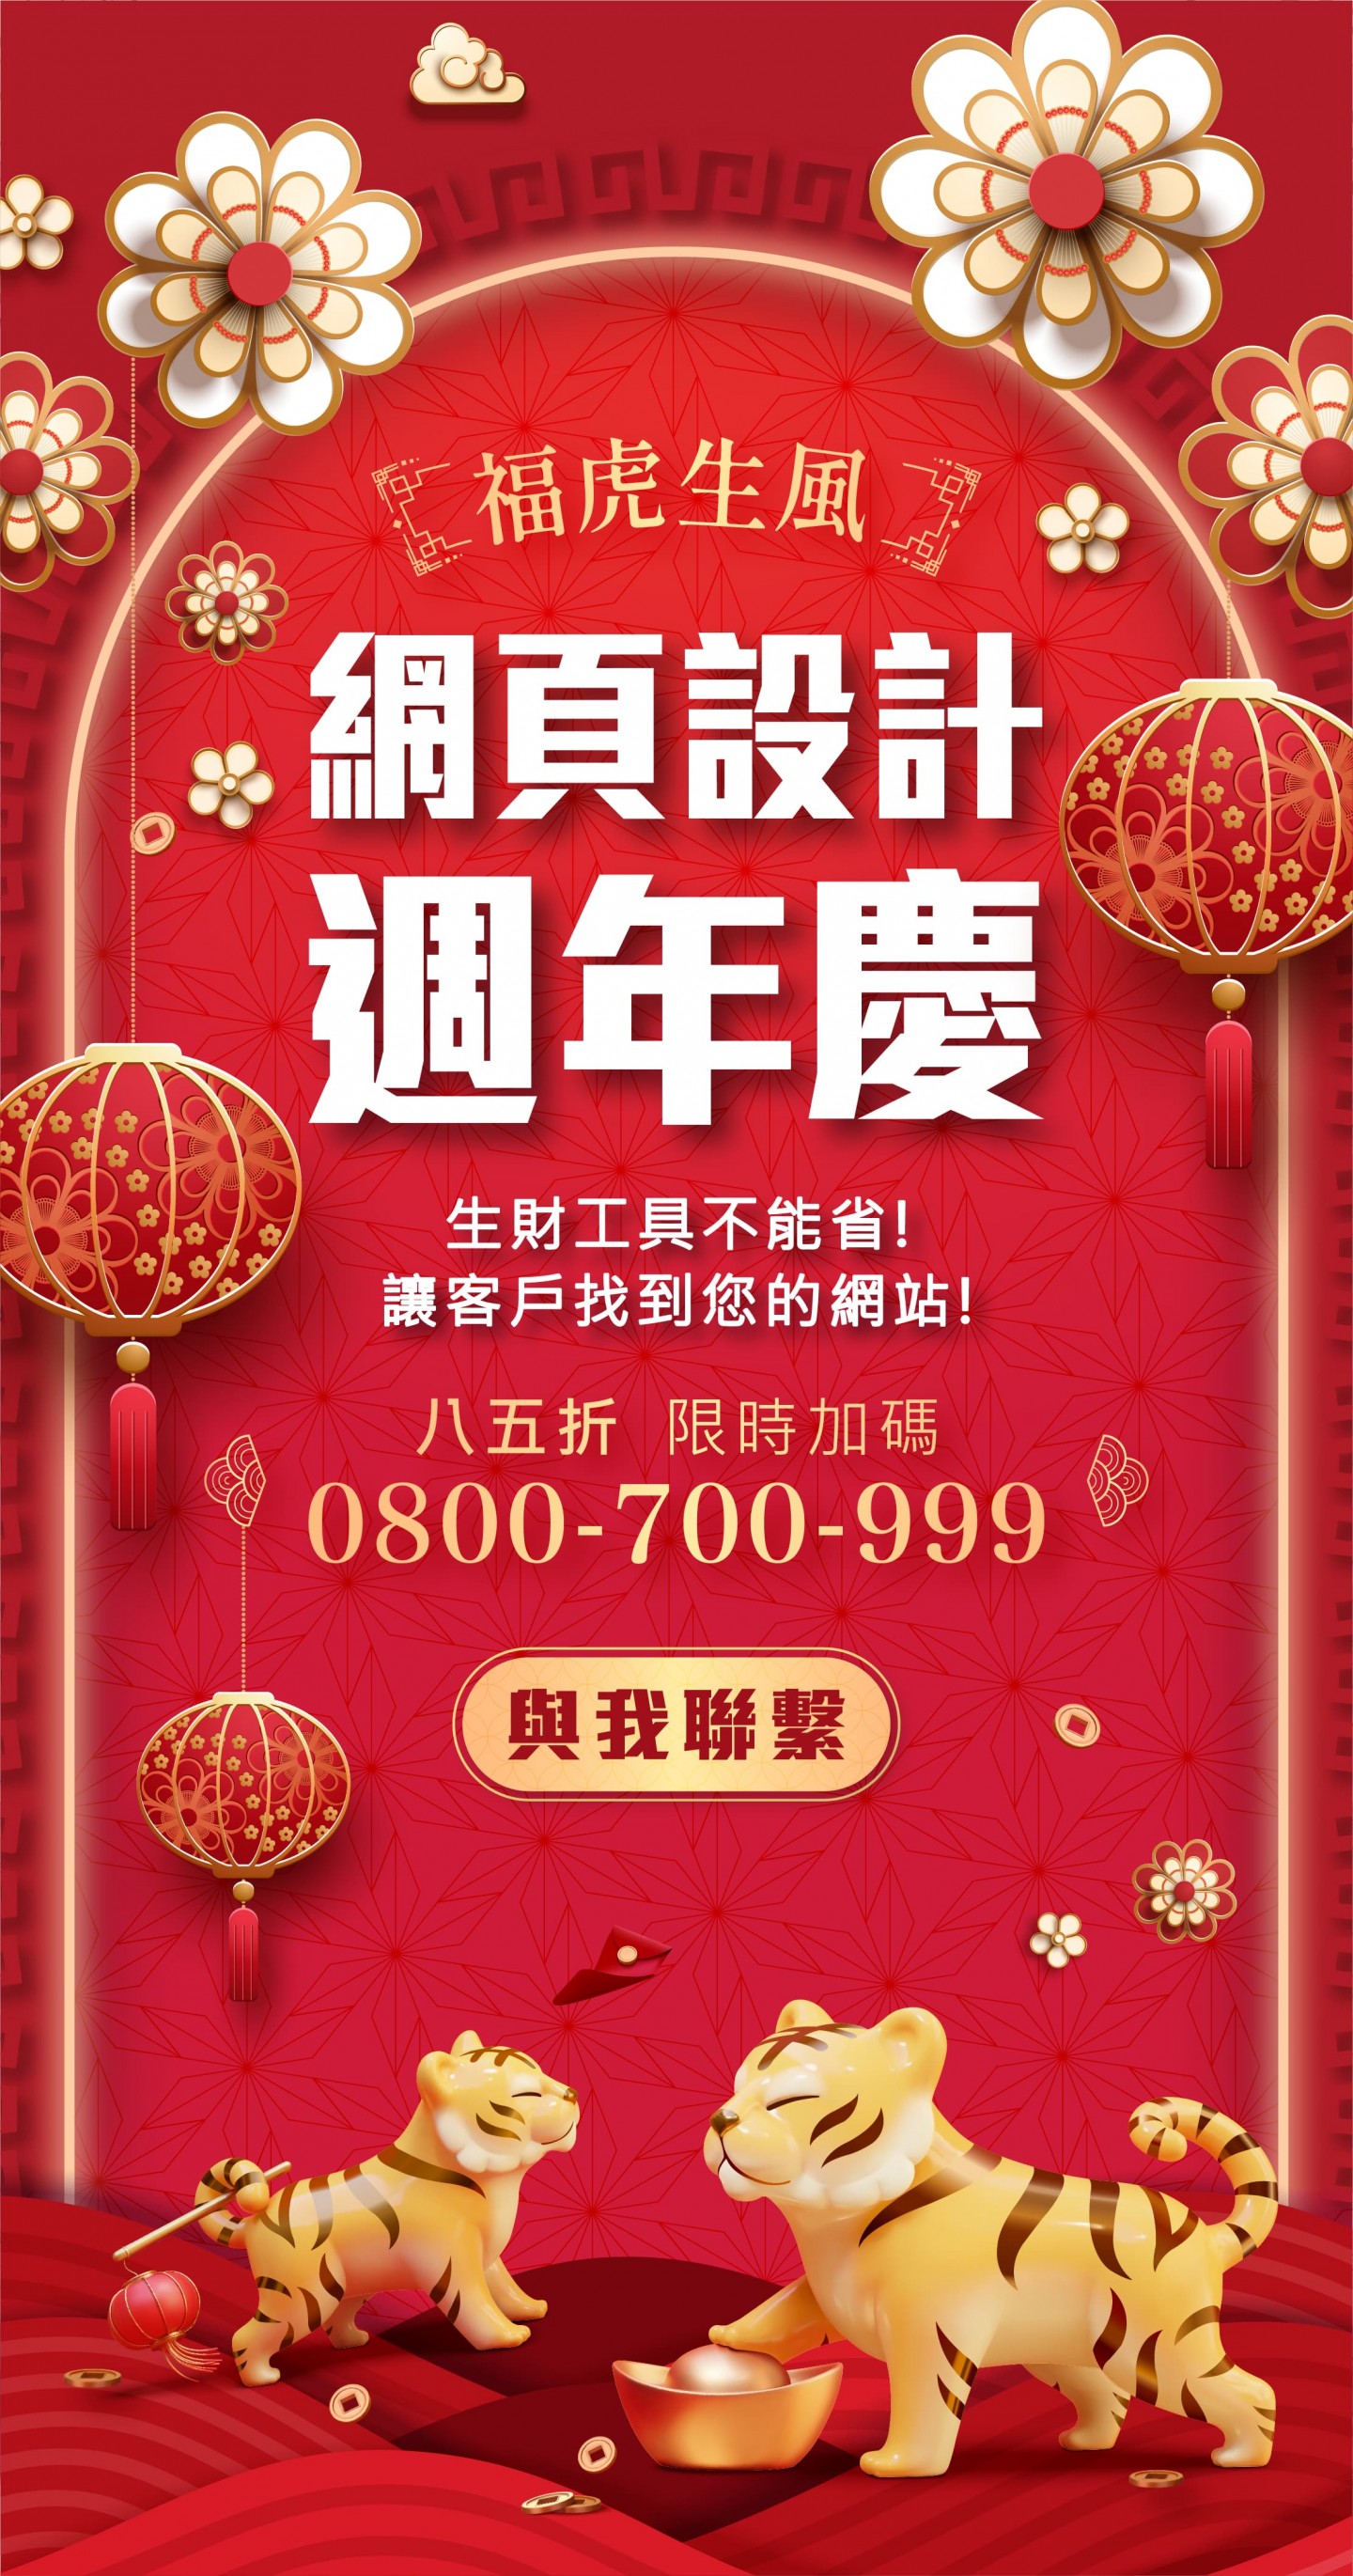 台北網頁設計周年慶